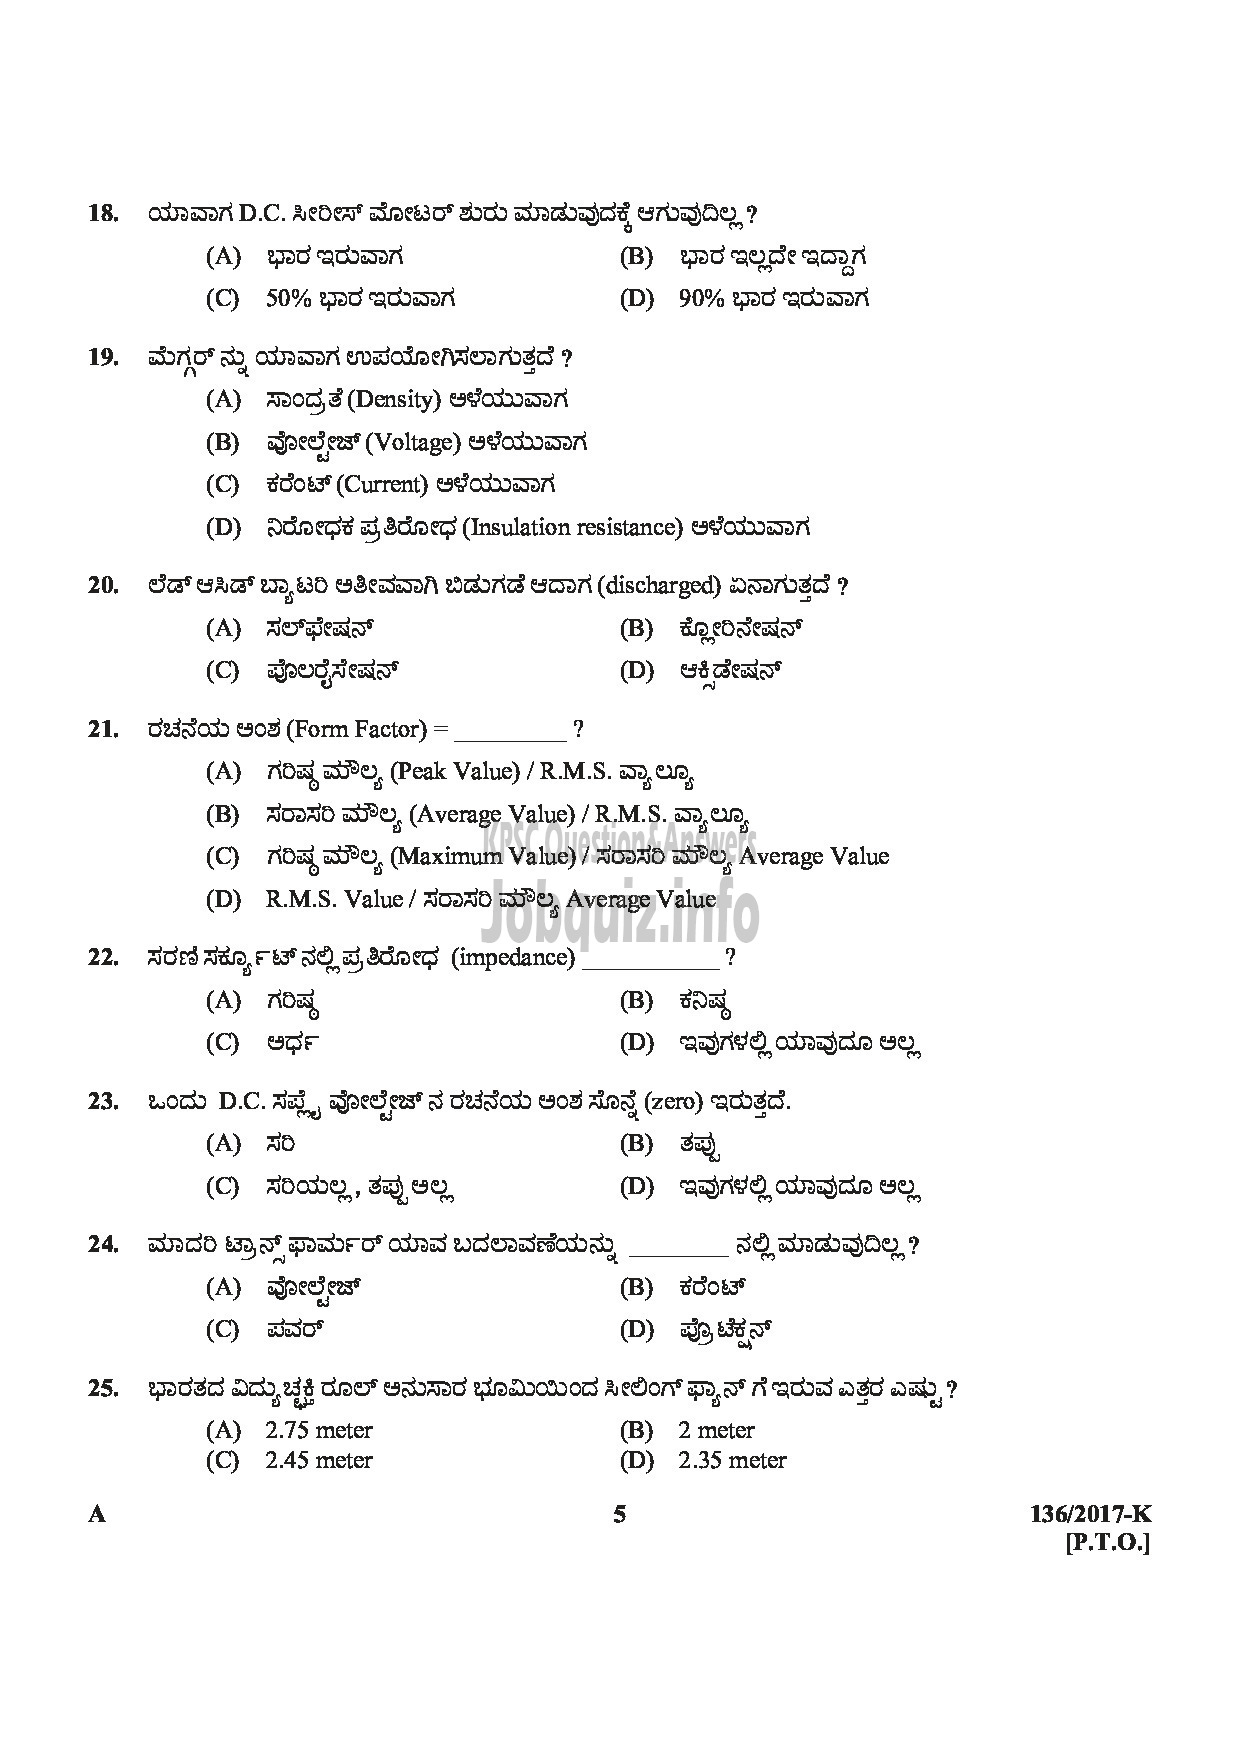 Kerala PSC Question Paper - METER READER/SPOT BILLER SPECIAL RECRUITMENT FROM AMONG ST ONLY MEDIUM OF QUESTION KANNADA-5